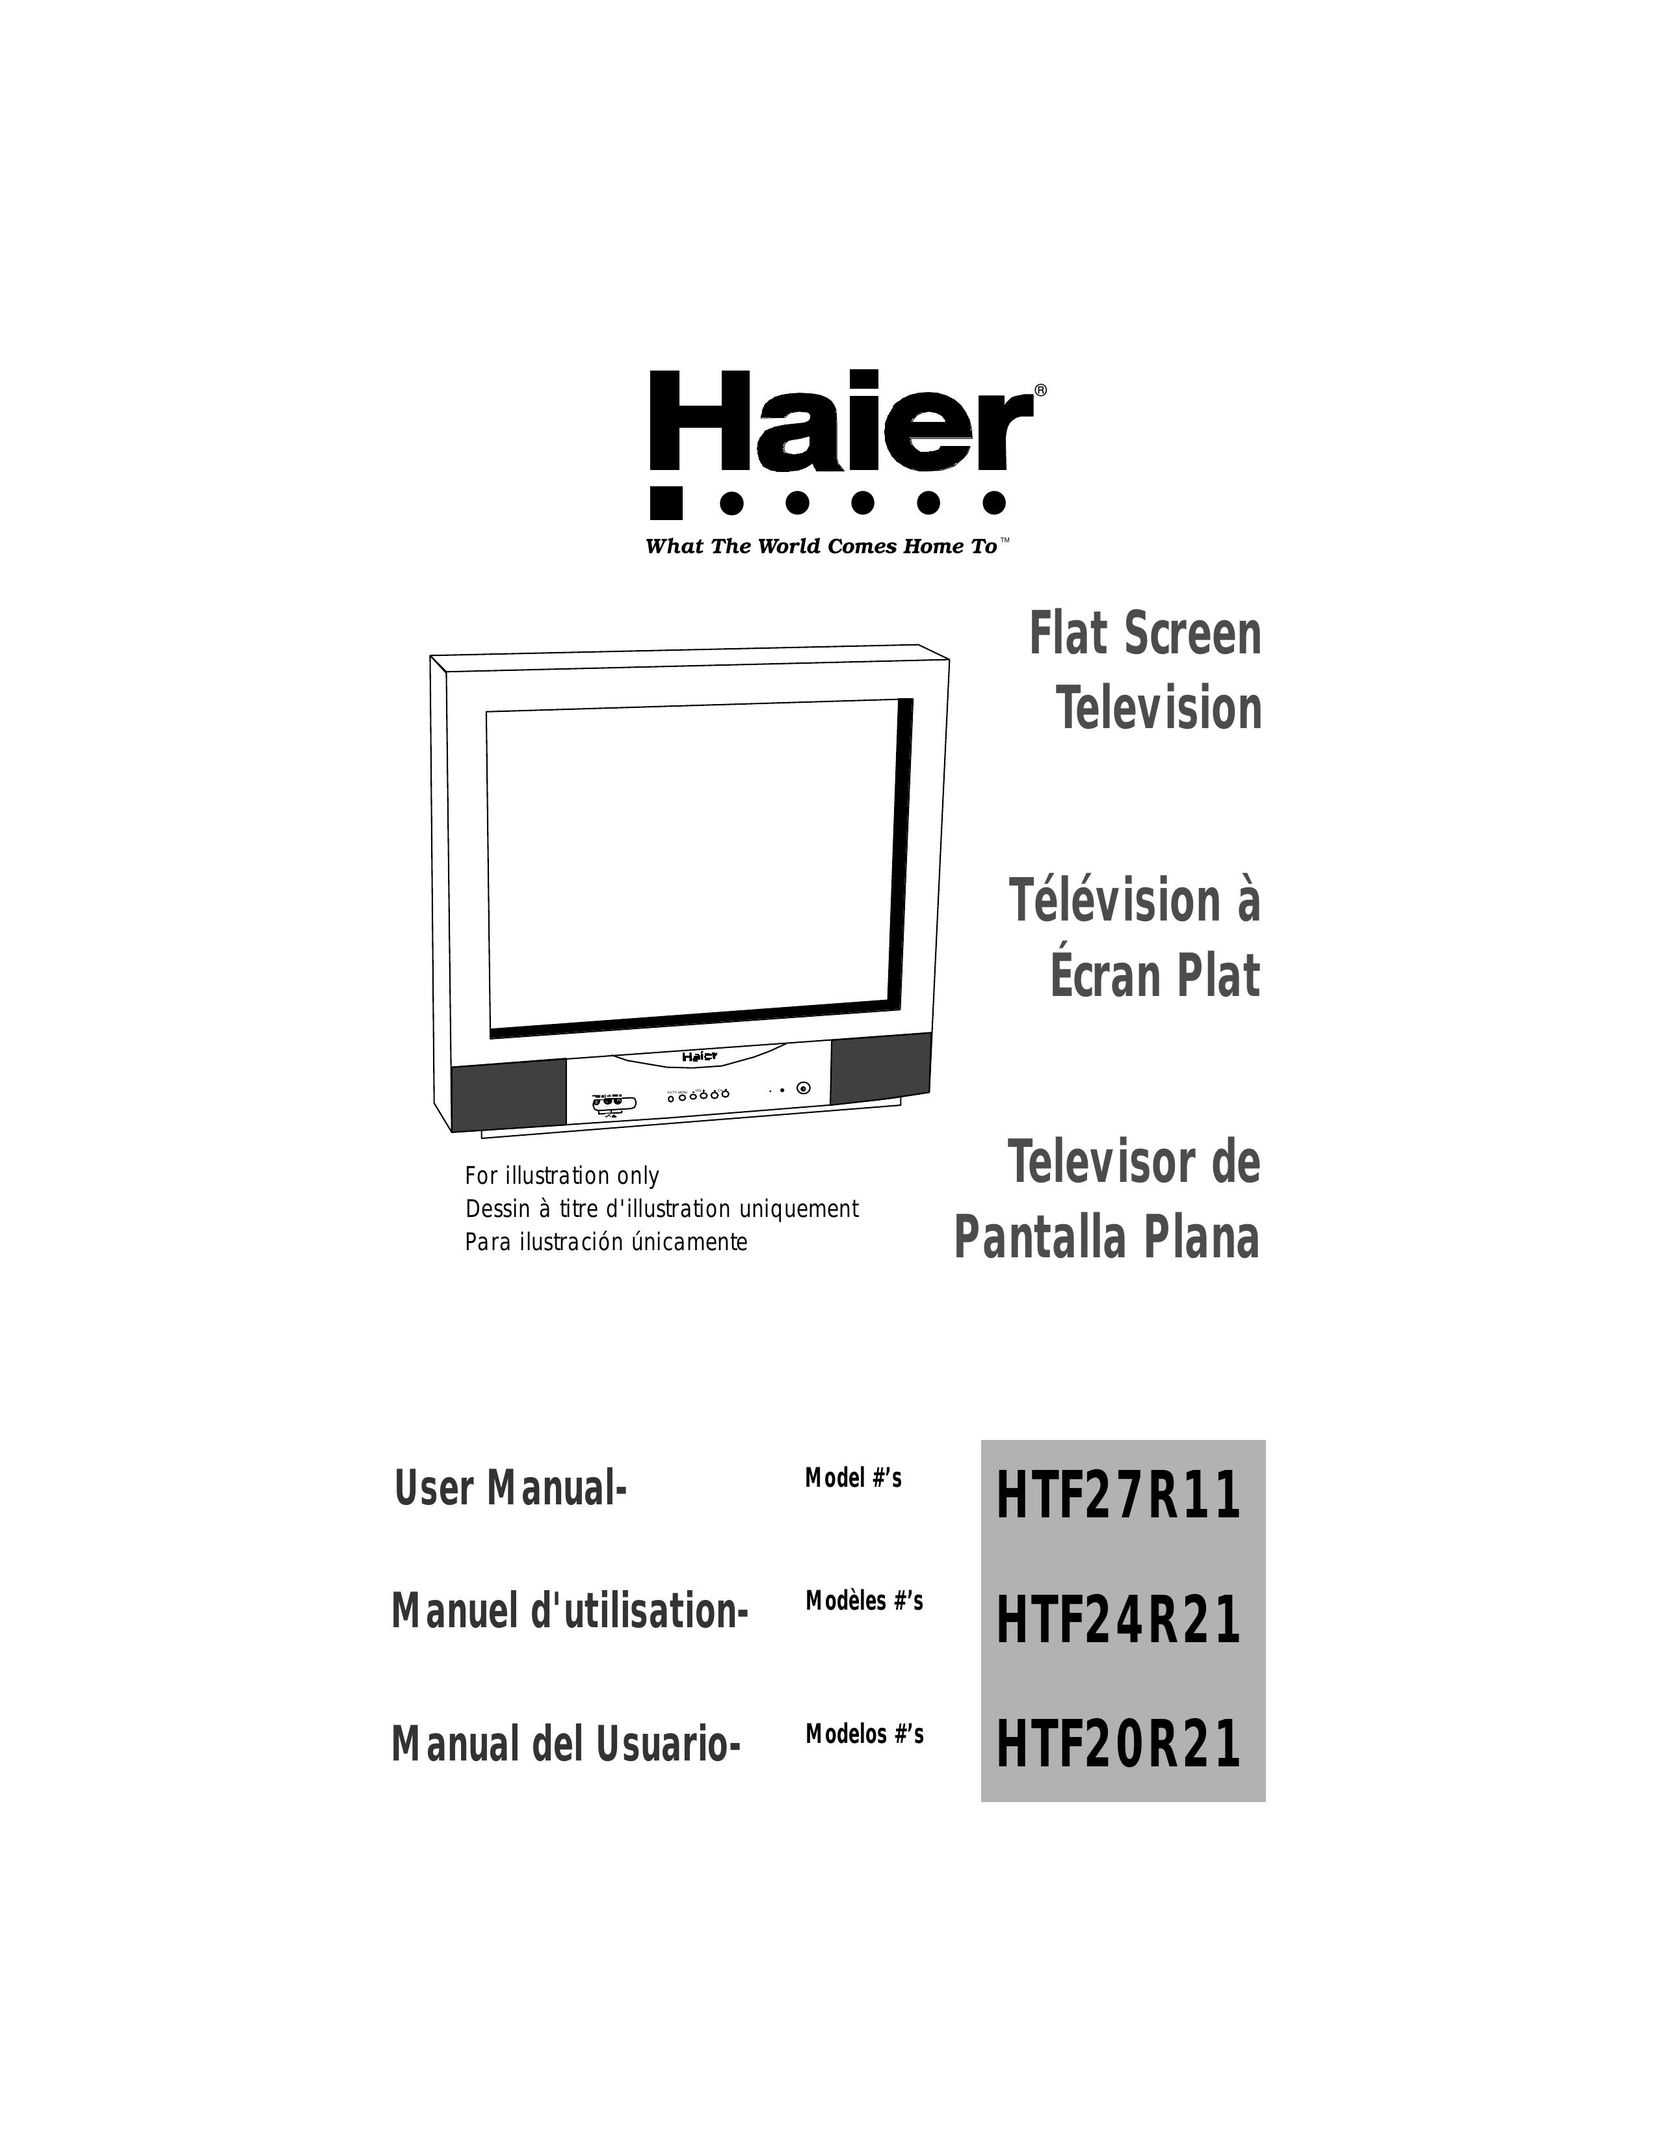 Haier HTF27R11 CRT Television User Manual